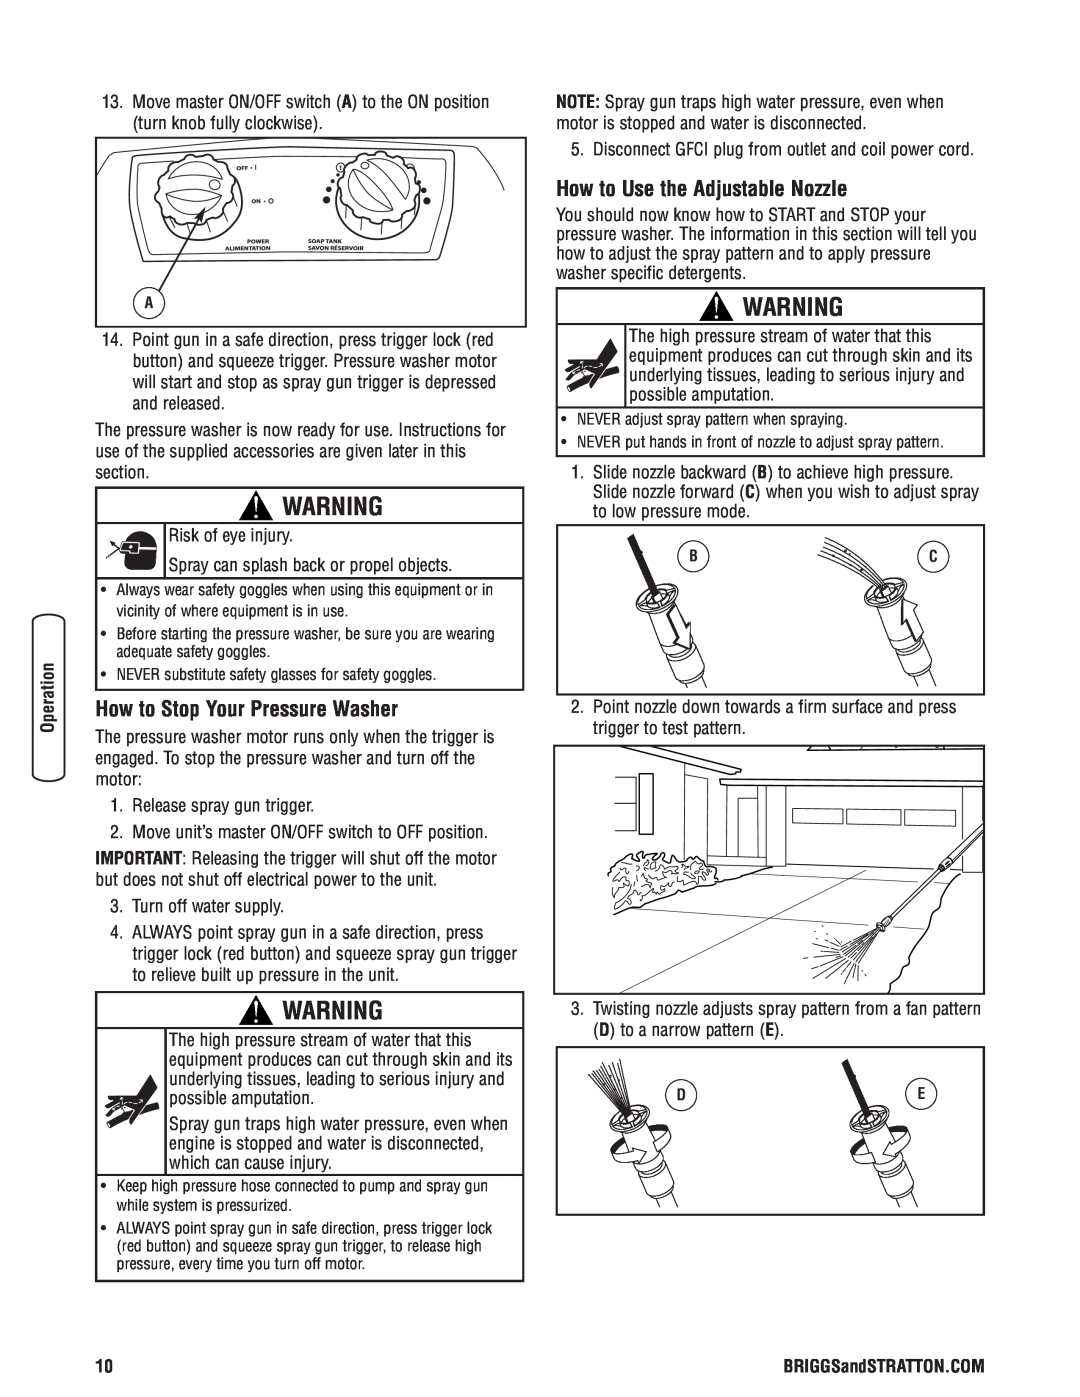 Briggs & Stratton Electric Pressure Washer manual How to Stop Your Pressure Washer, How to Use the Adjustable Nozzle 